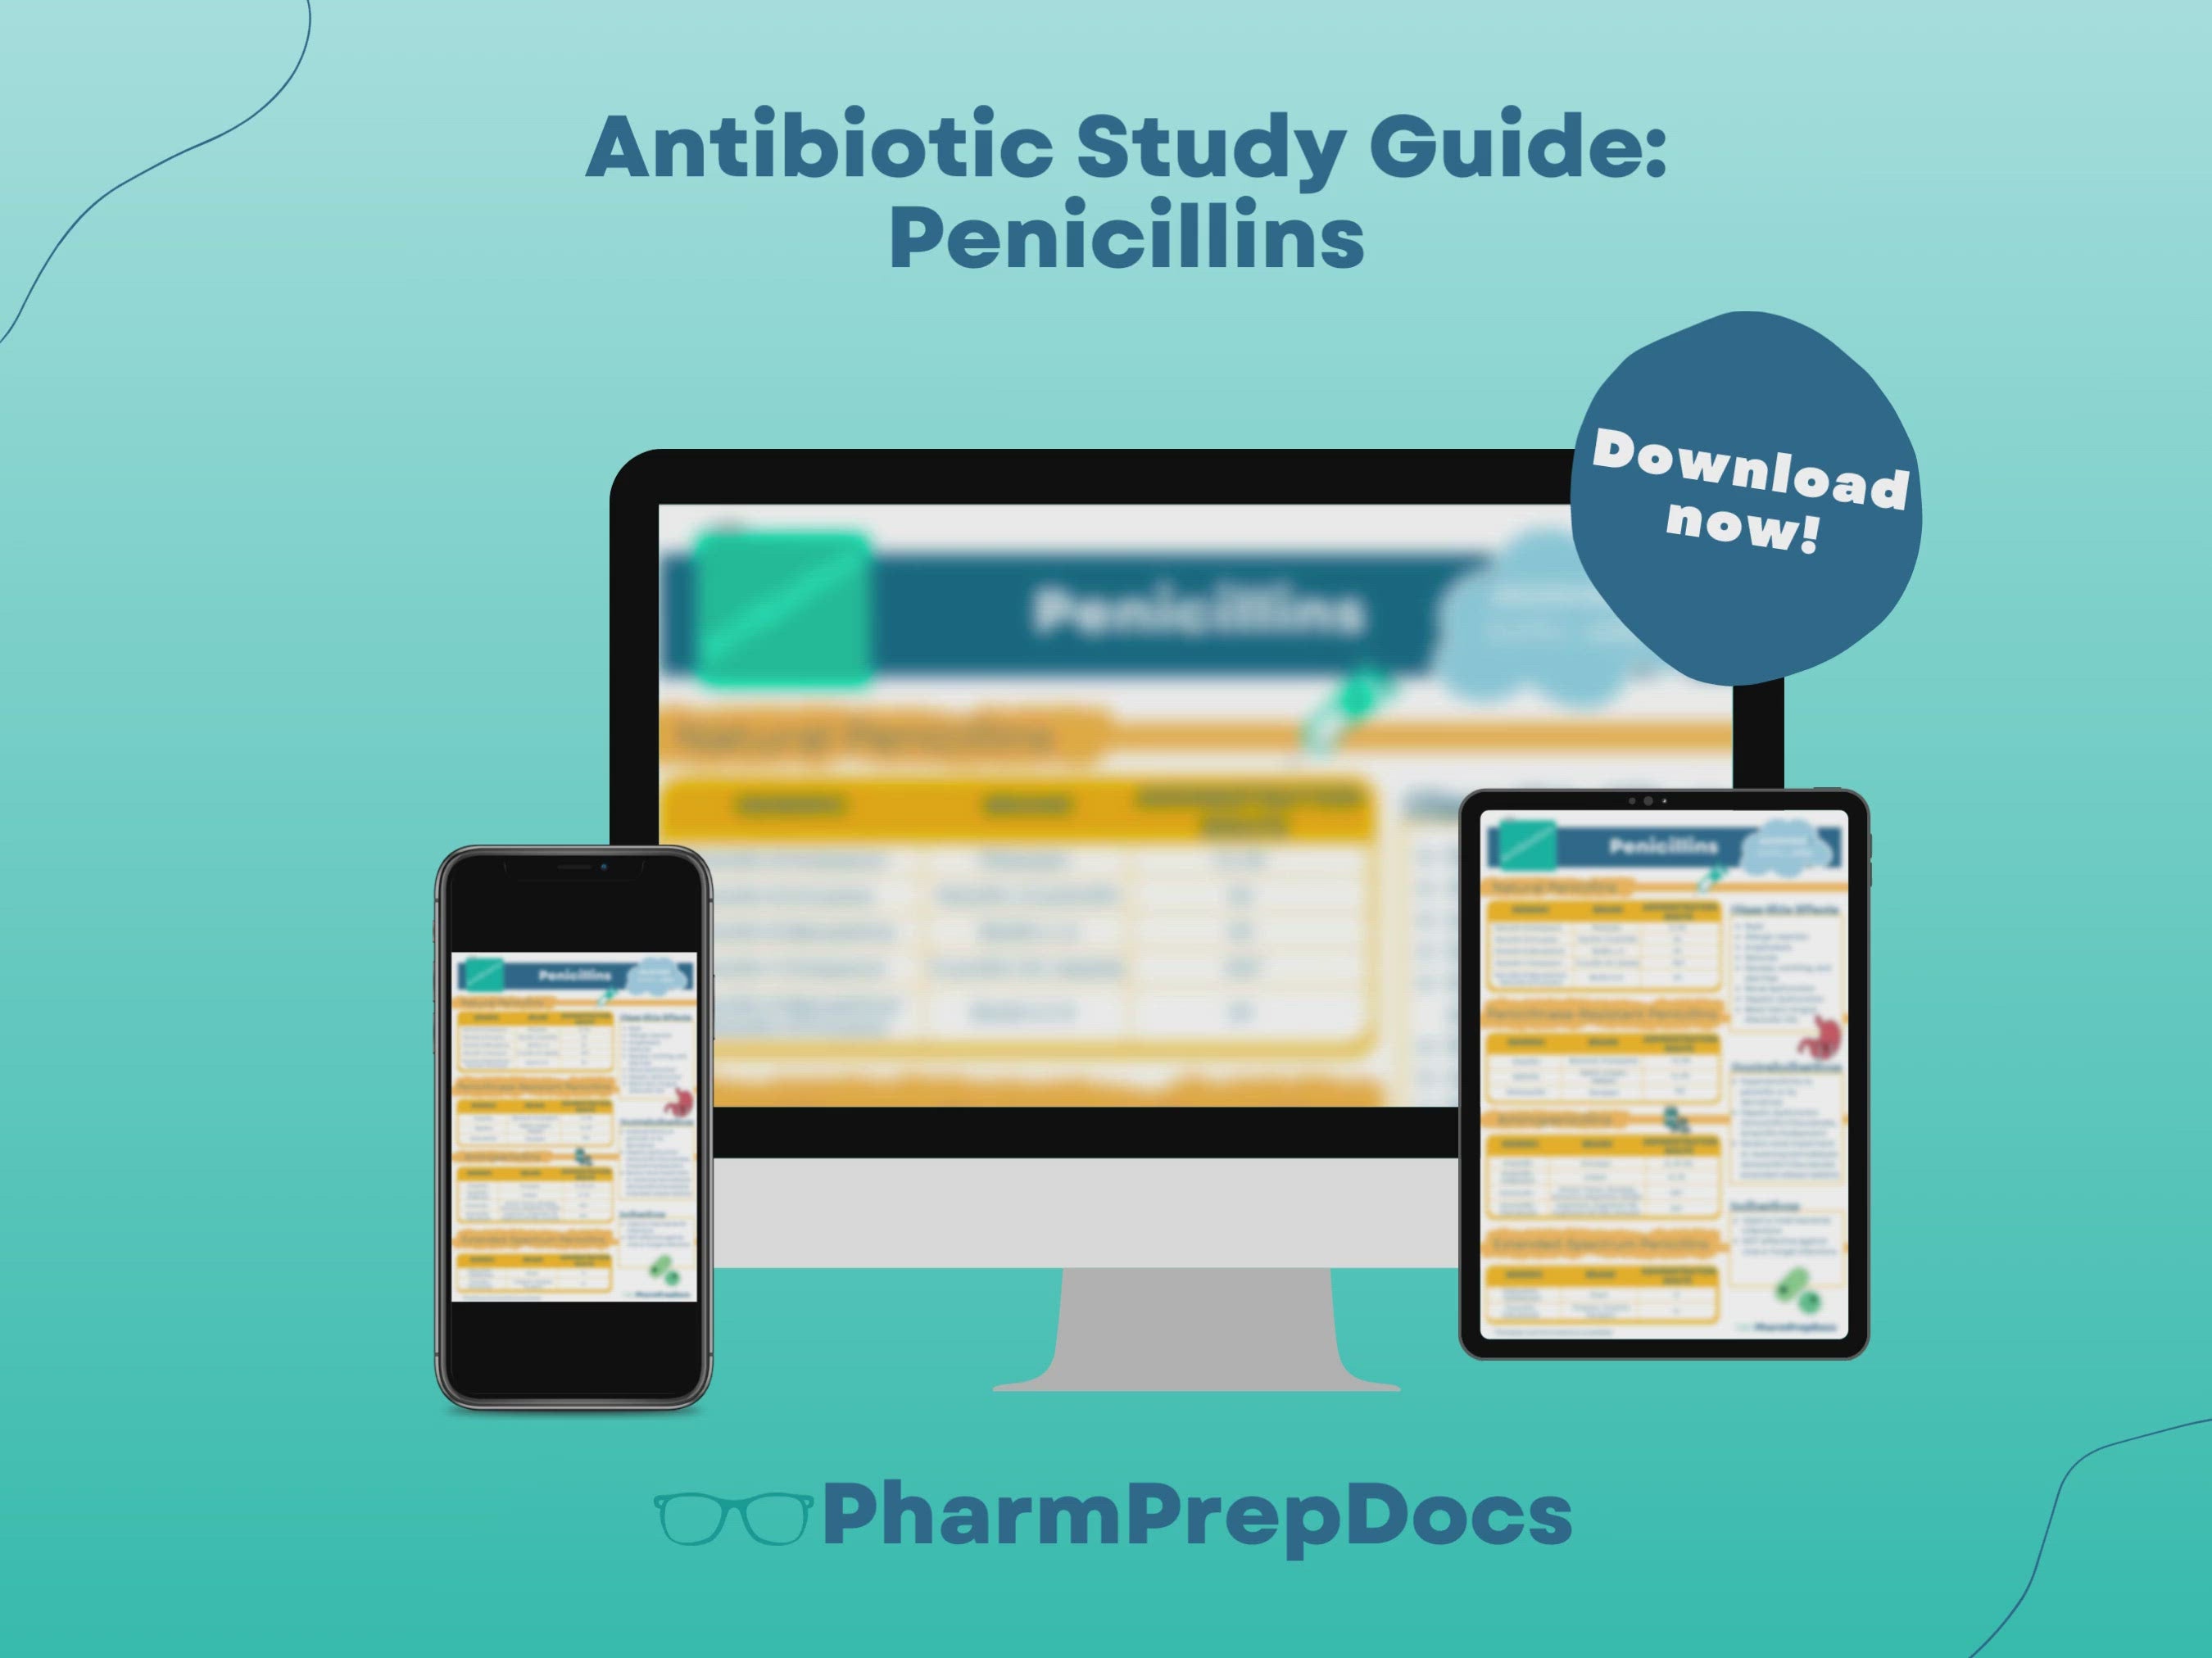 Antibiotic Study Guide: Penicillins